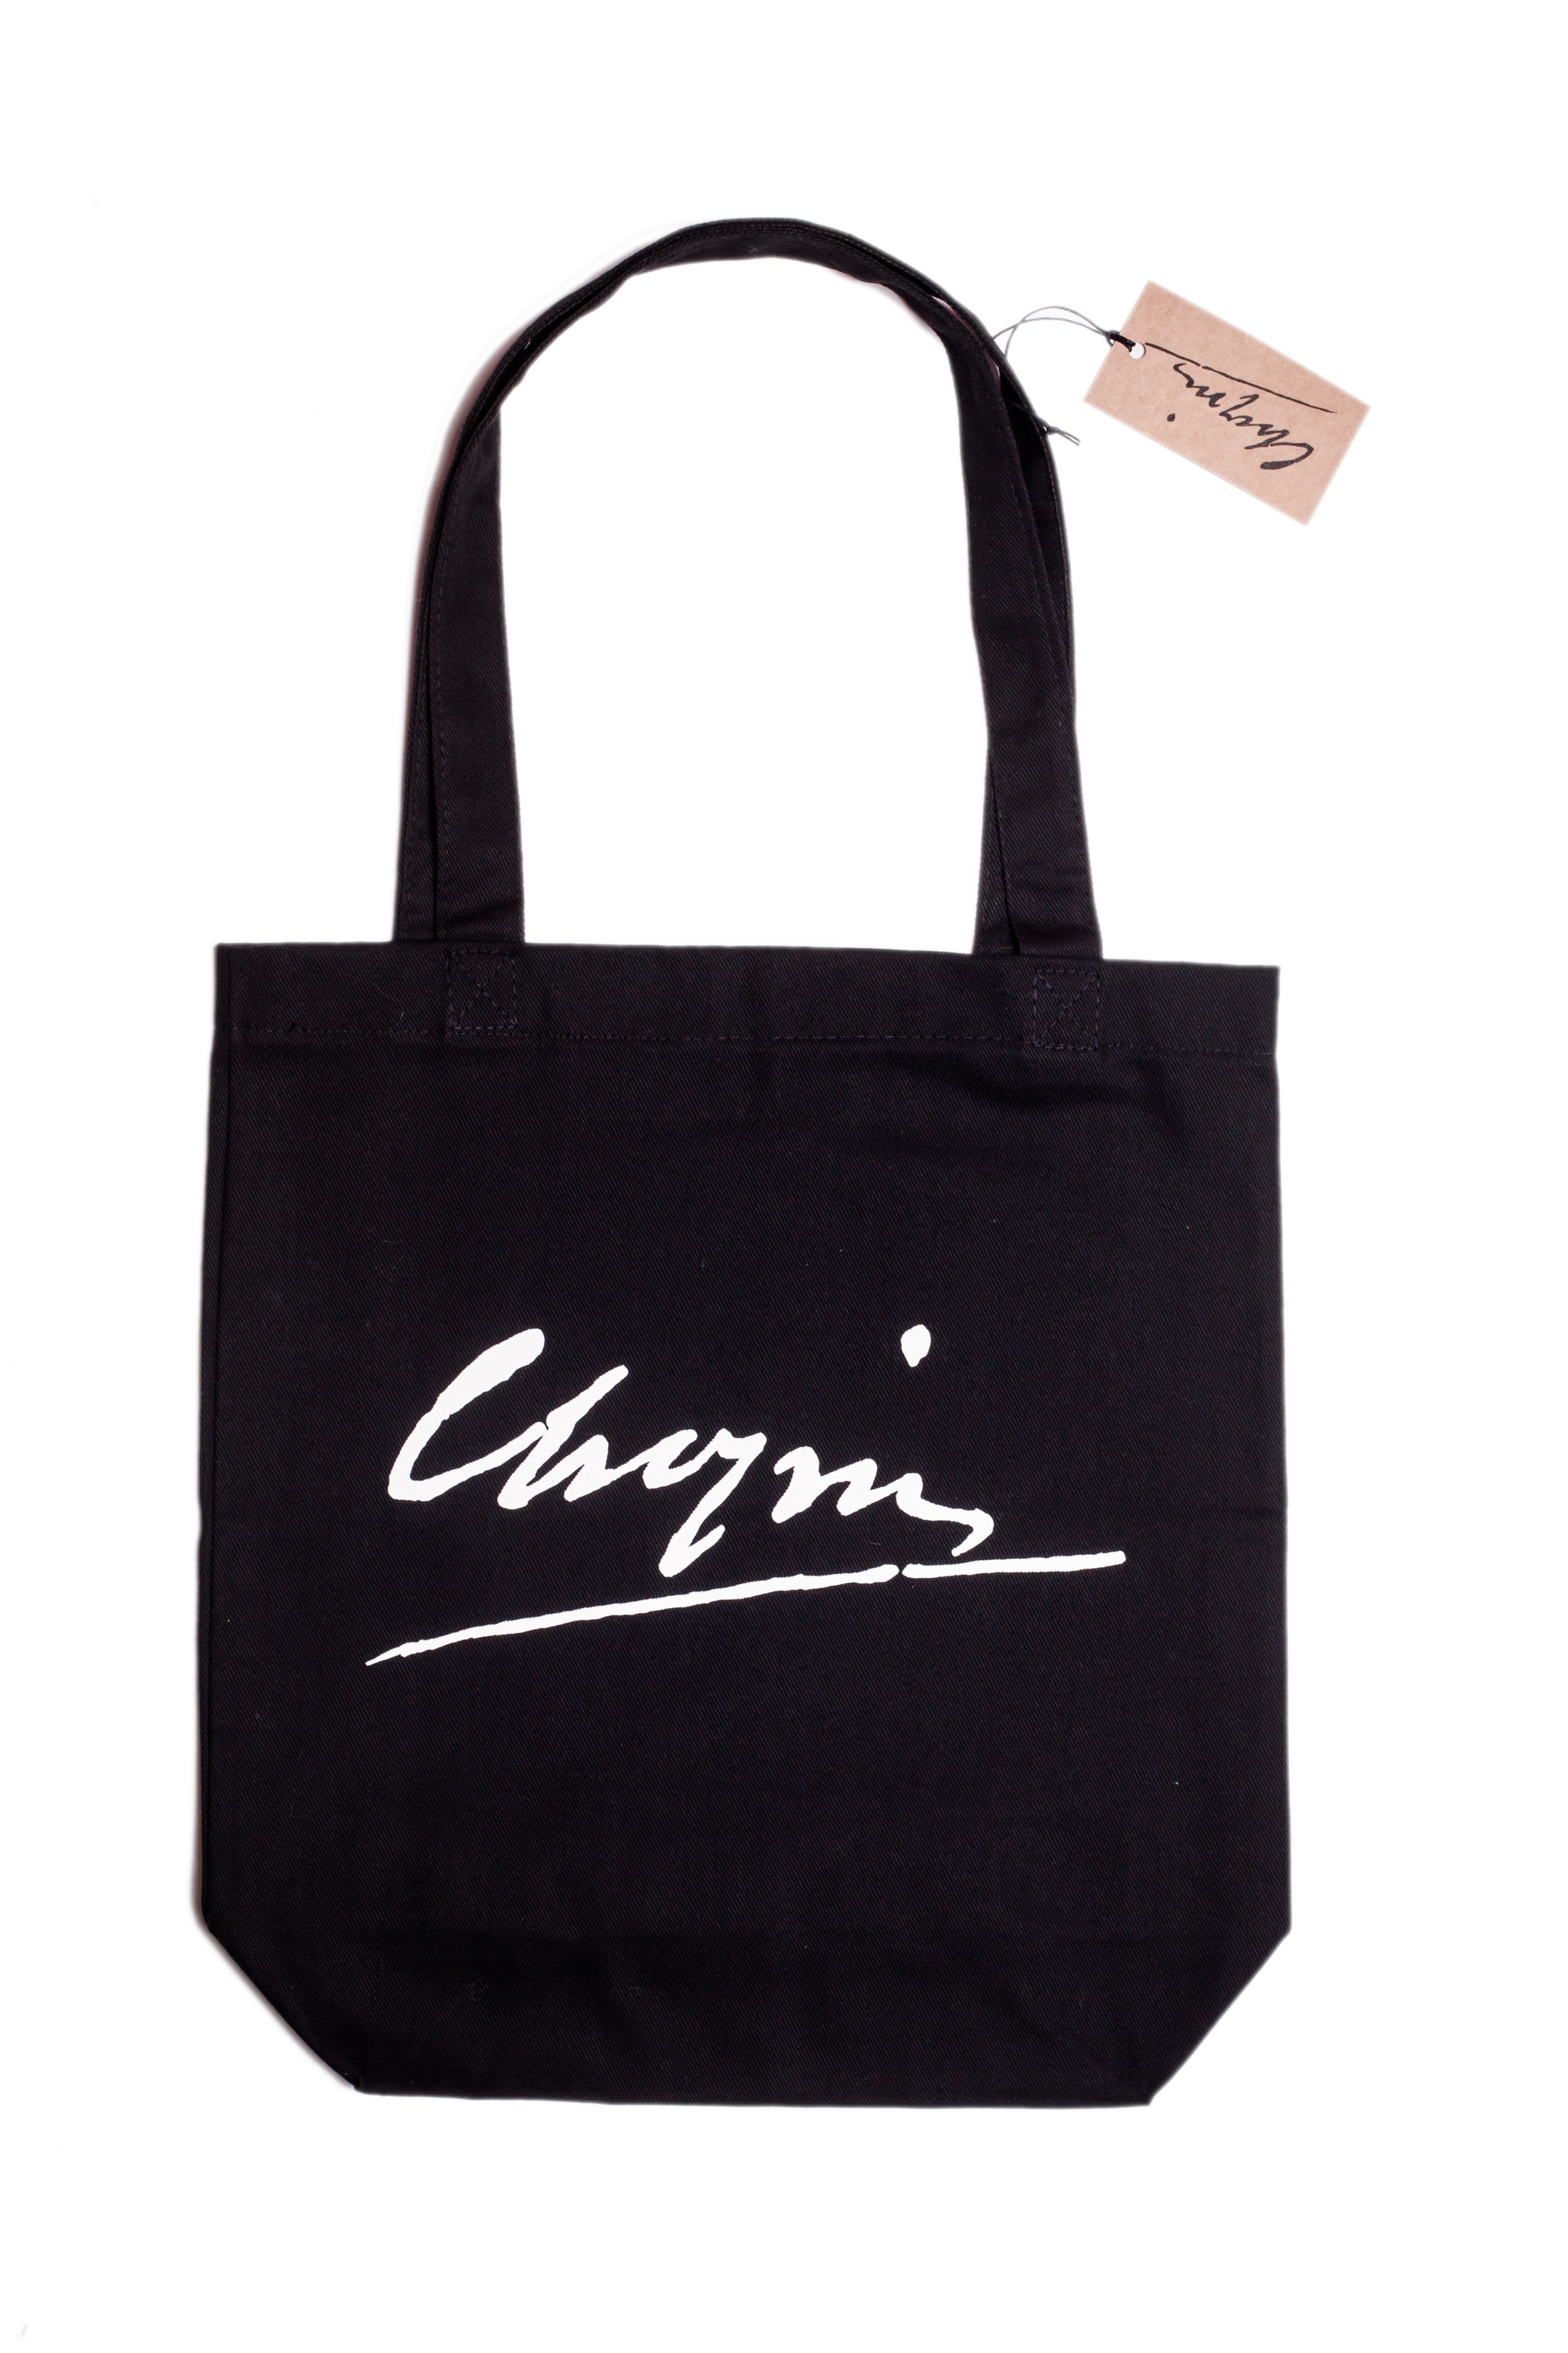 Chopin Bag 2